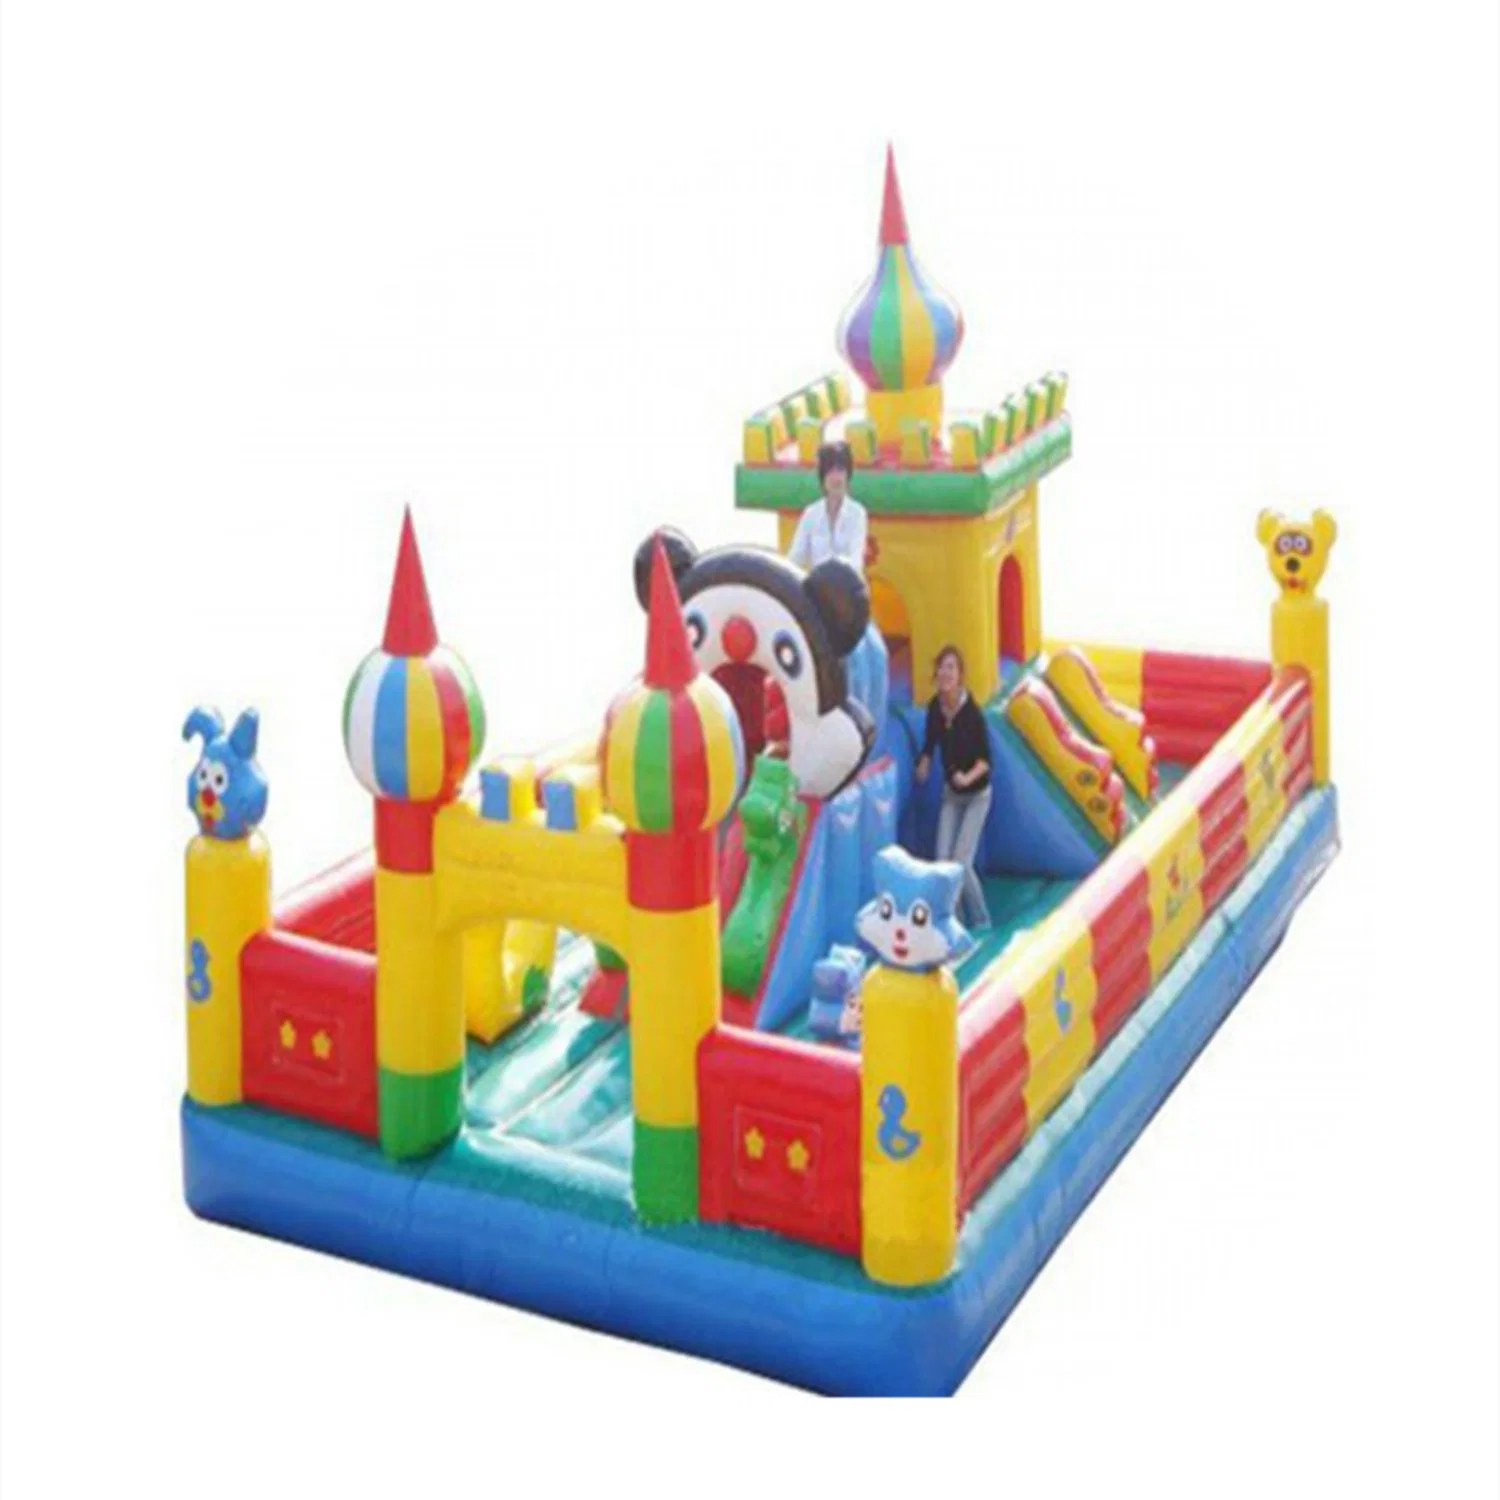 Outdoor Children's Inflatable Castle Amusement Park Equipment Slide Toy 40CB